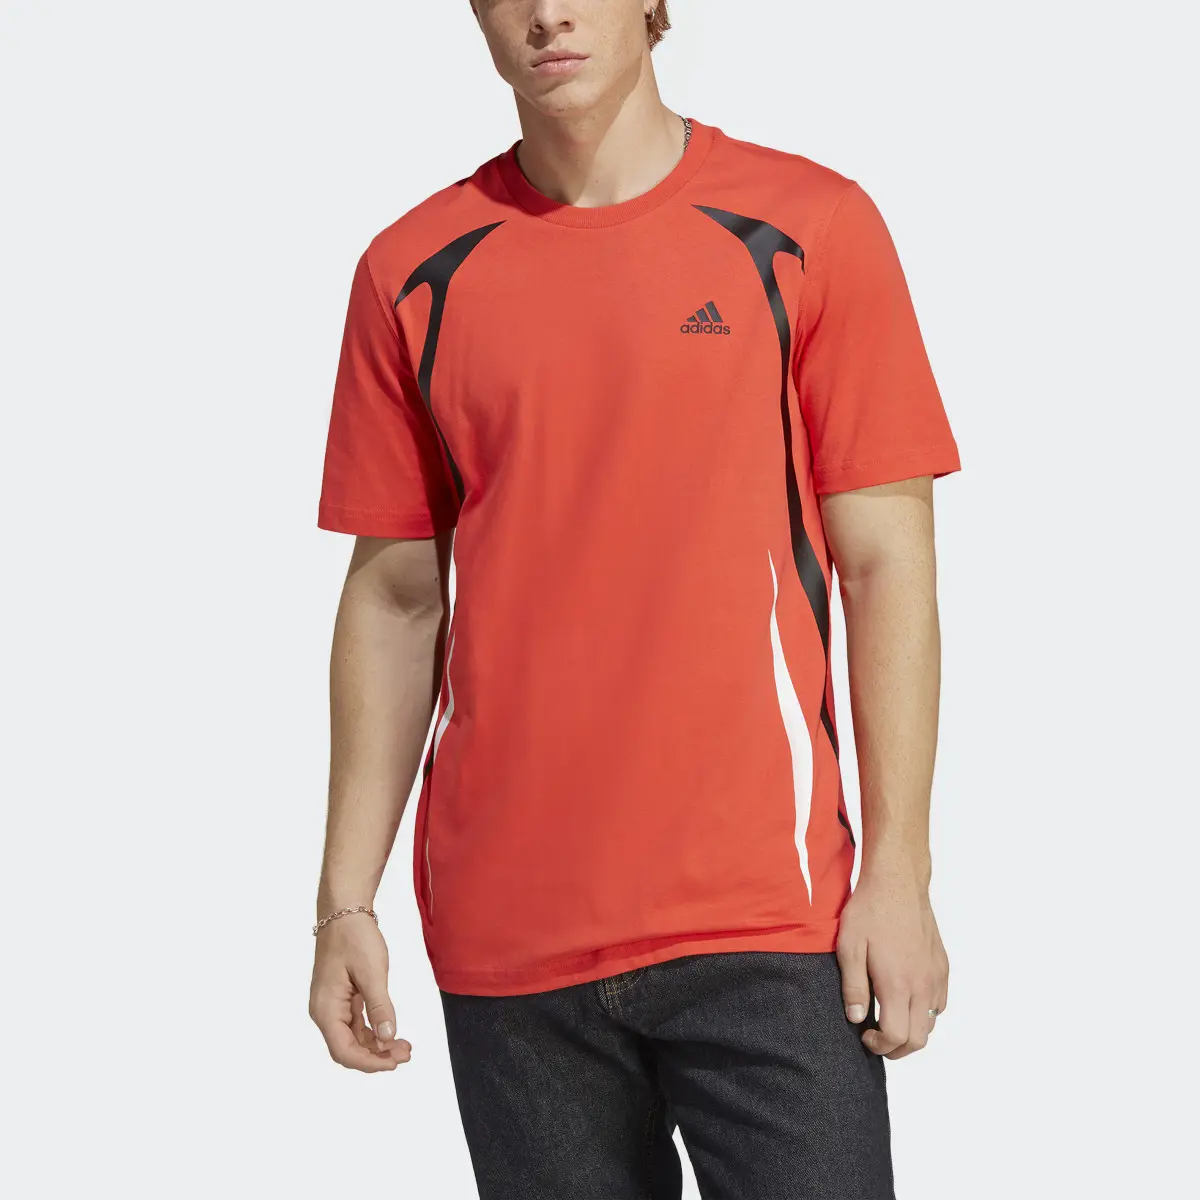 Adidas Camiseta Colourblock. 1